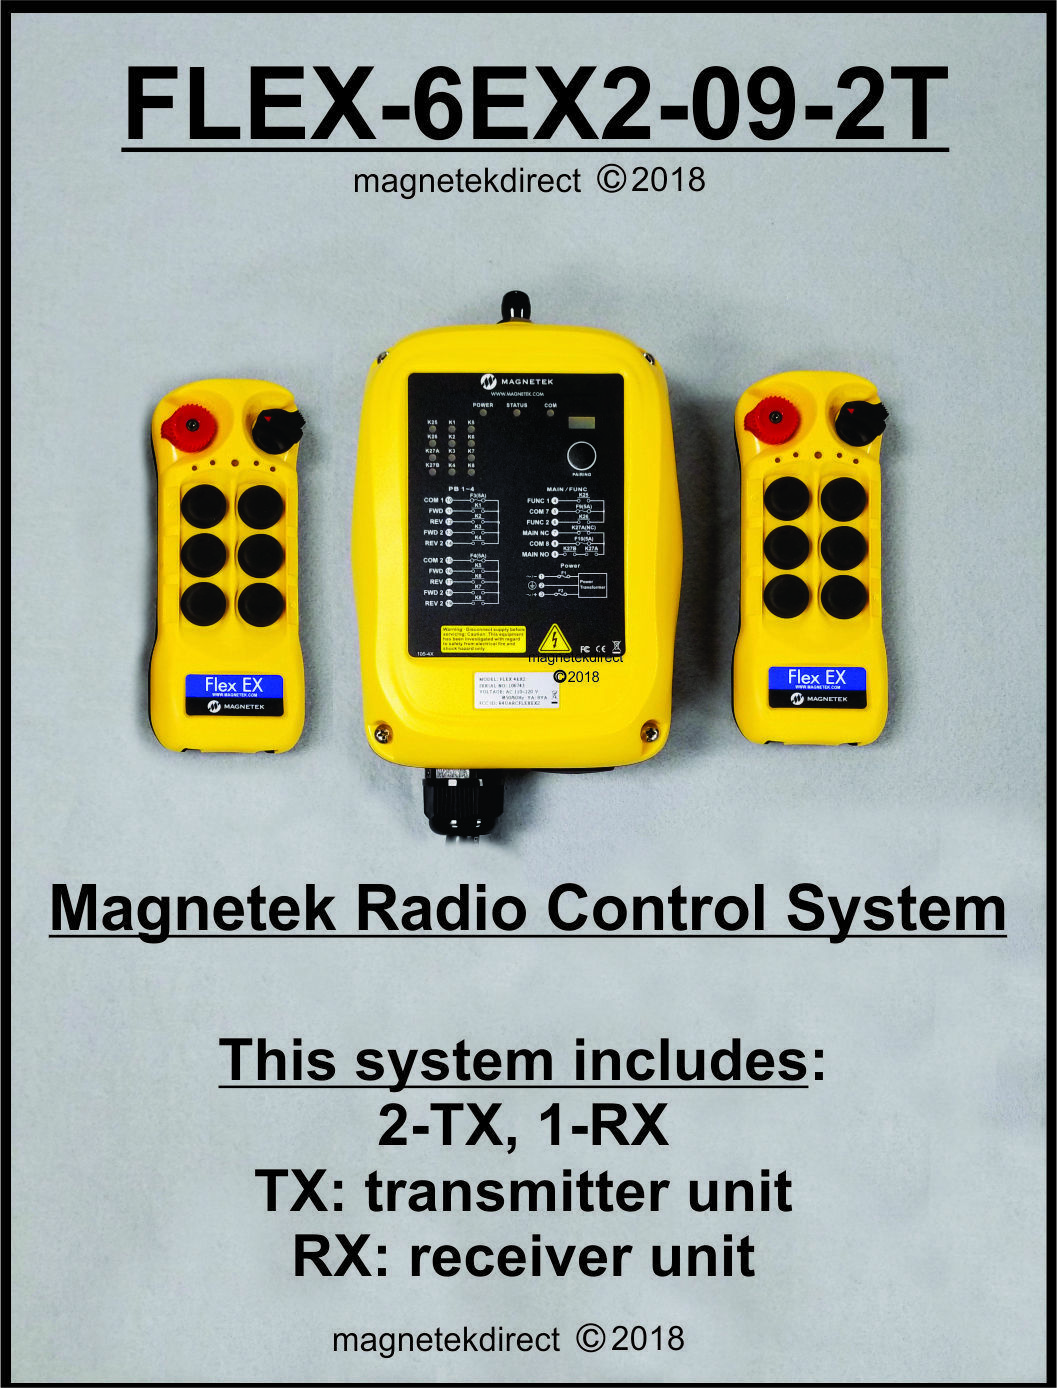 W/free Boot $50 Value Magnetek Flex-6ex2-09-2t Crane Radio Remote Control System